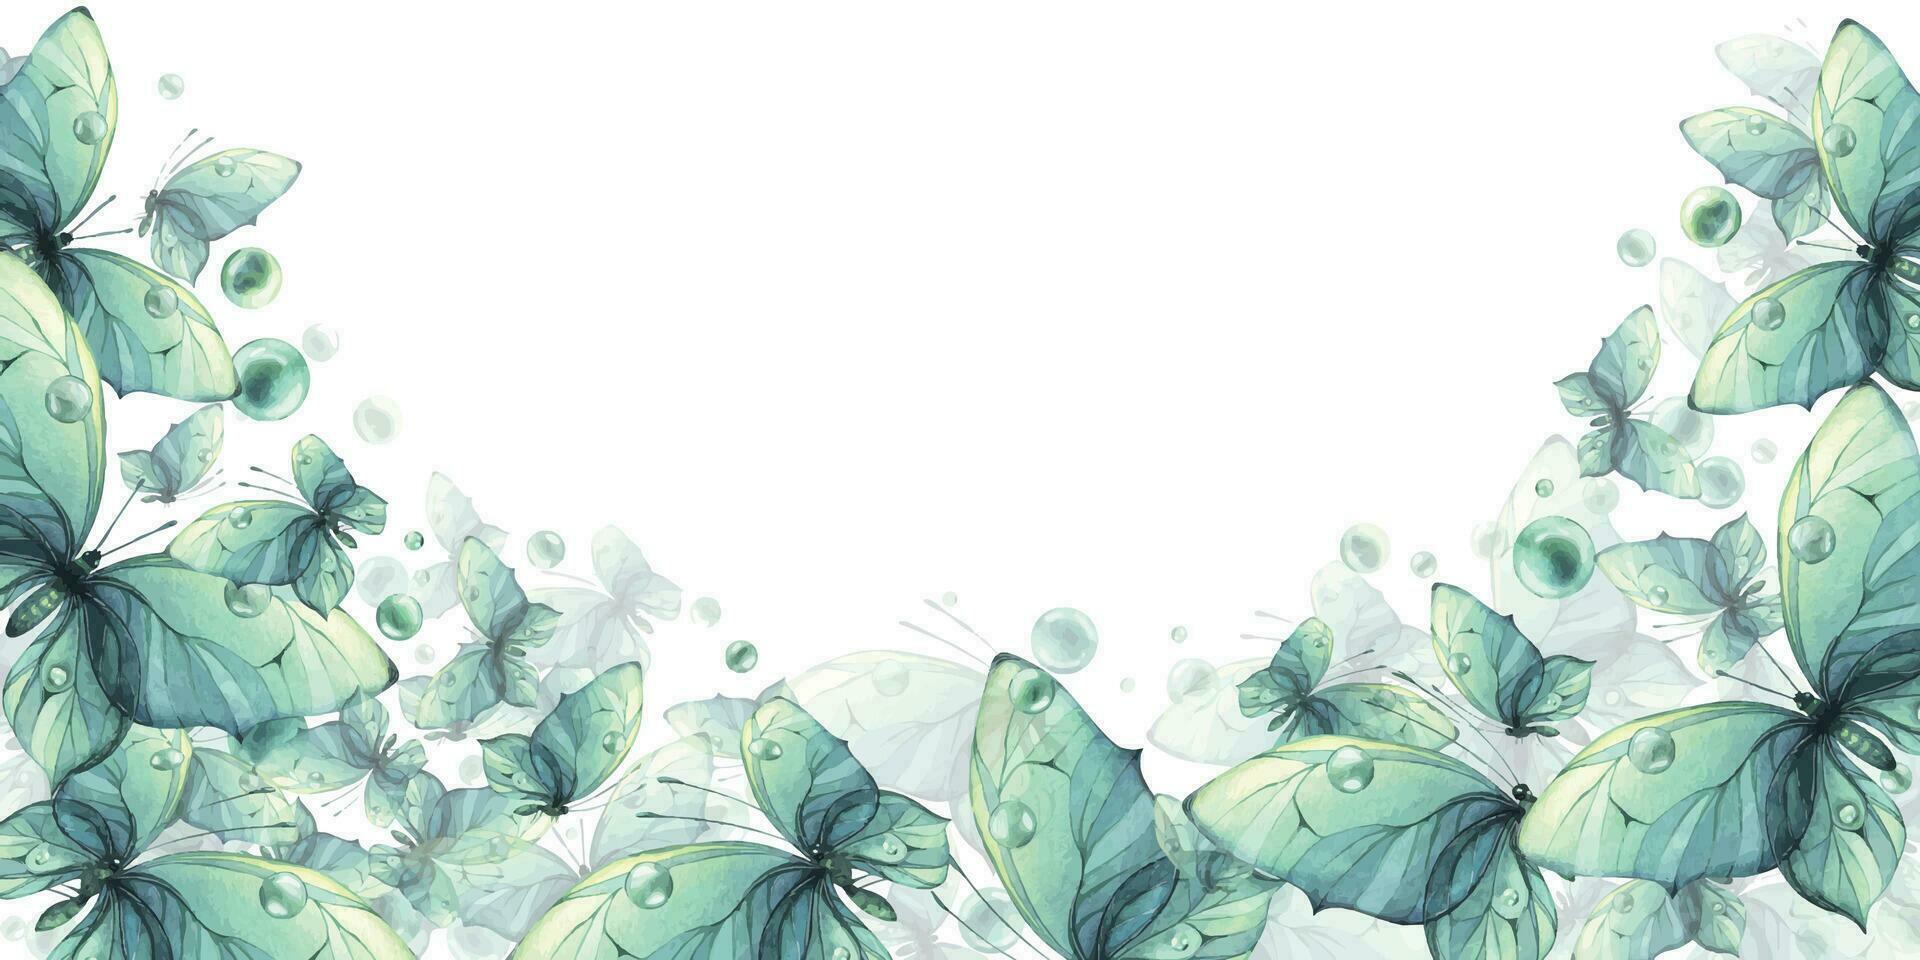 delikat turkos och blå fjärilar med bubblor är luftig, ljus, skön. hand dragen vattenfärg illustration. mall, ram på en vit bakgrund för kort, affischer. vektor